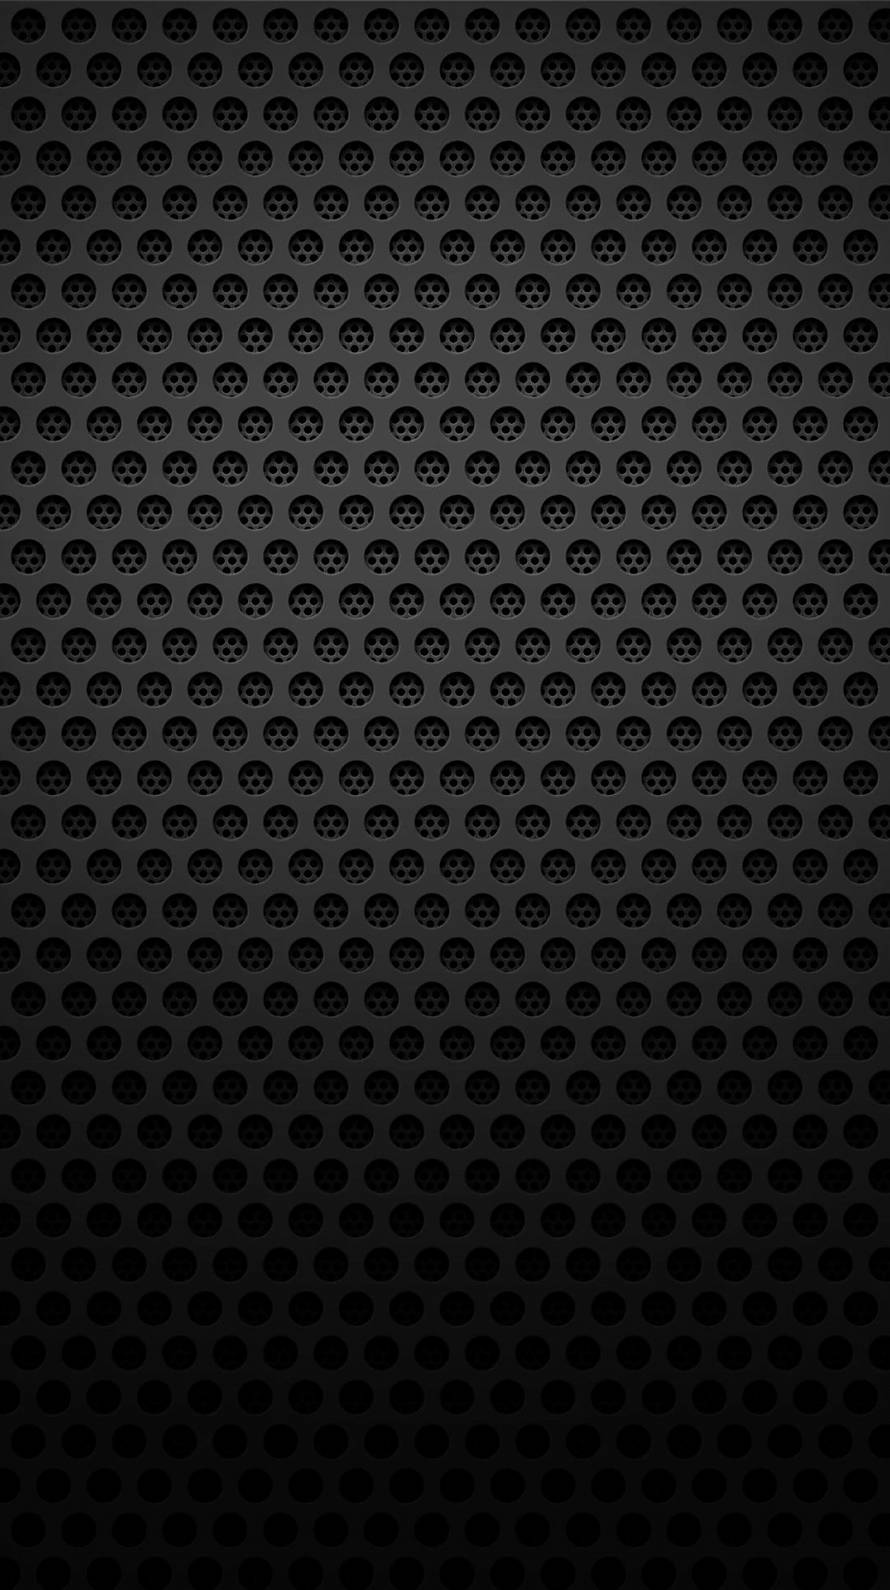 穴の開いた黒のメタリックなiphone6壁紙 Wallpaperbox